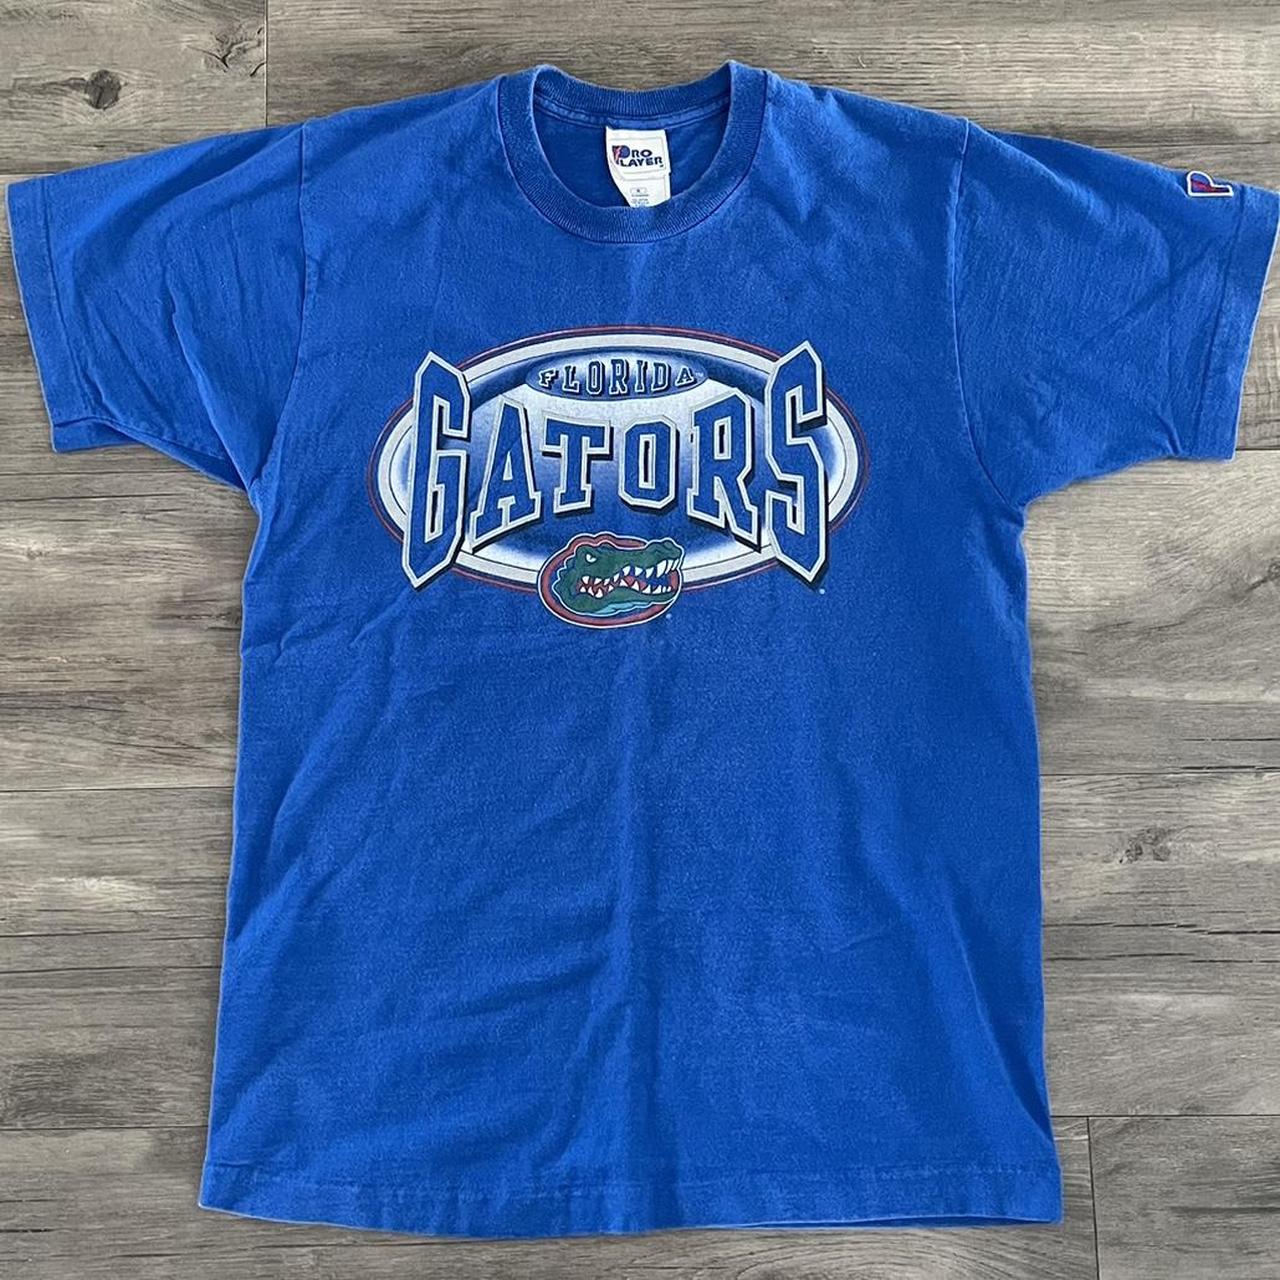 Vintage 90s made in usa Florida Gators T shirt On... - Depop